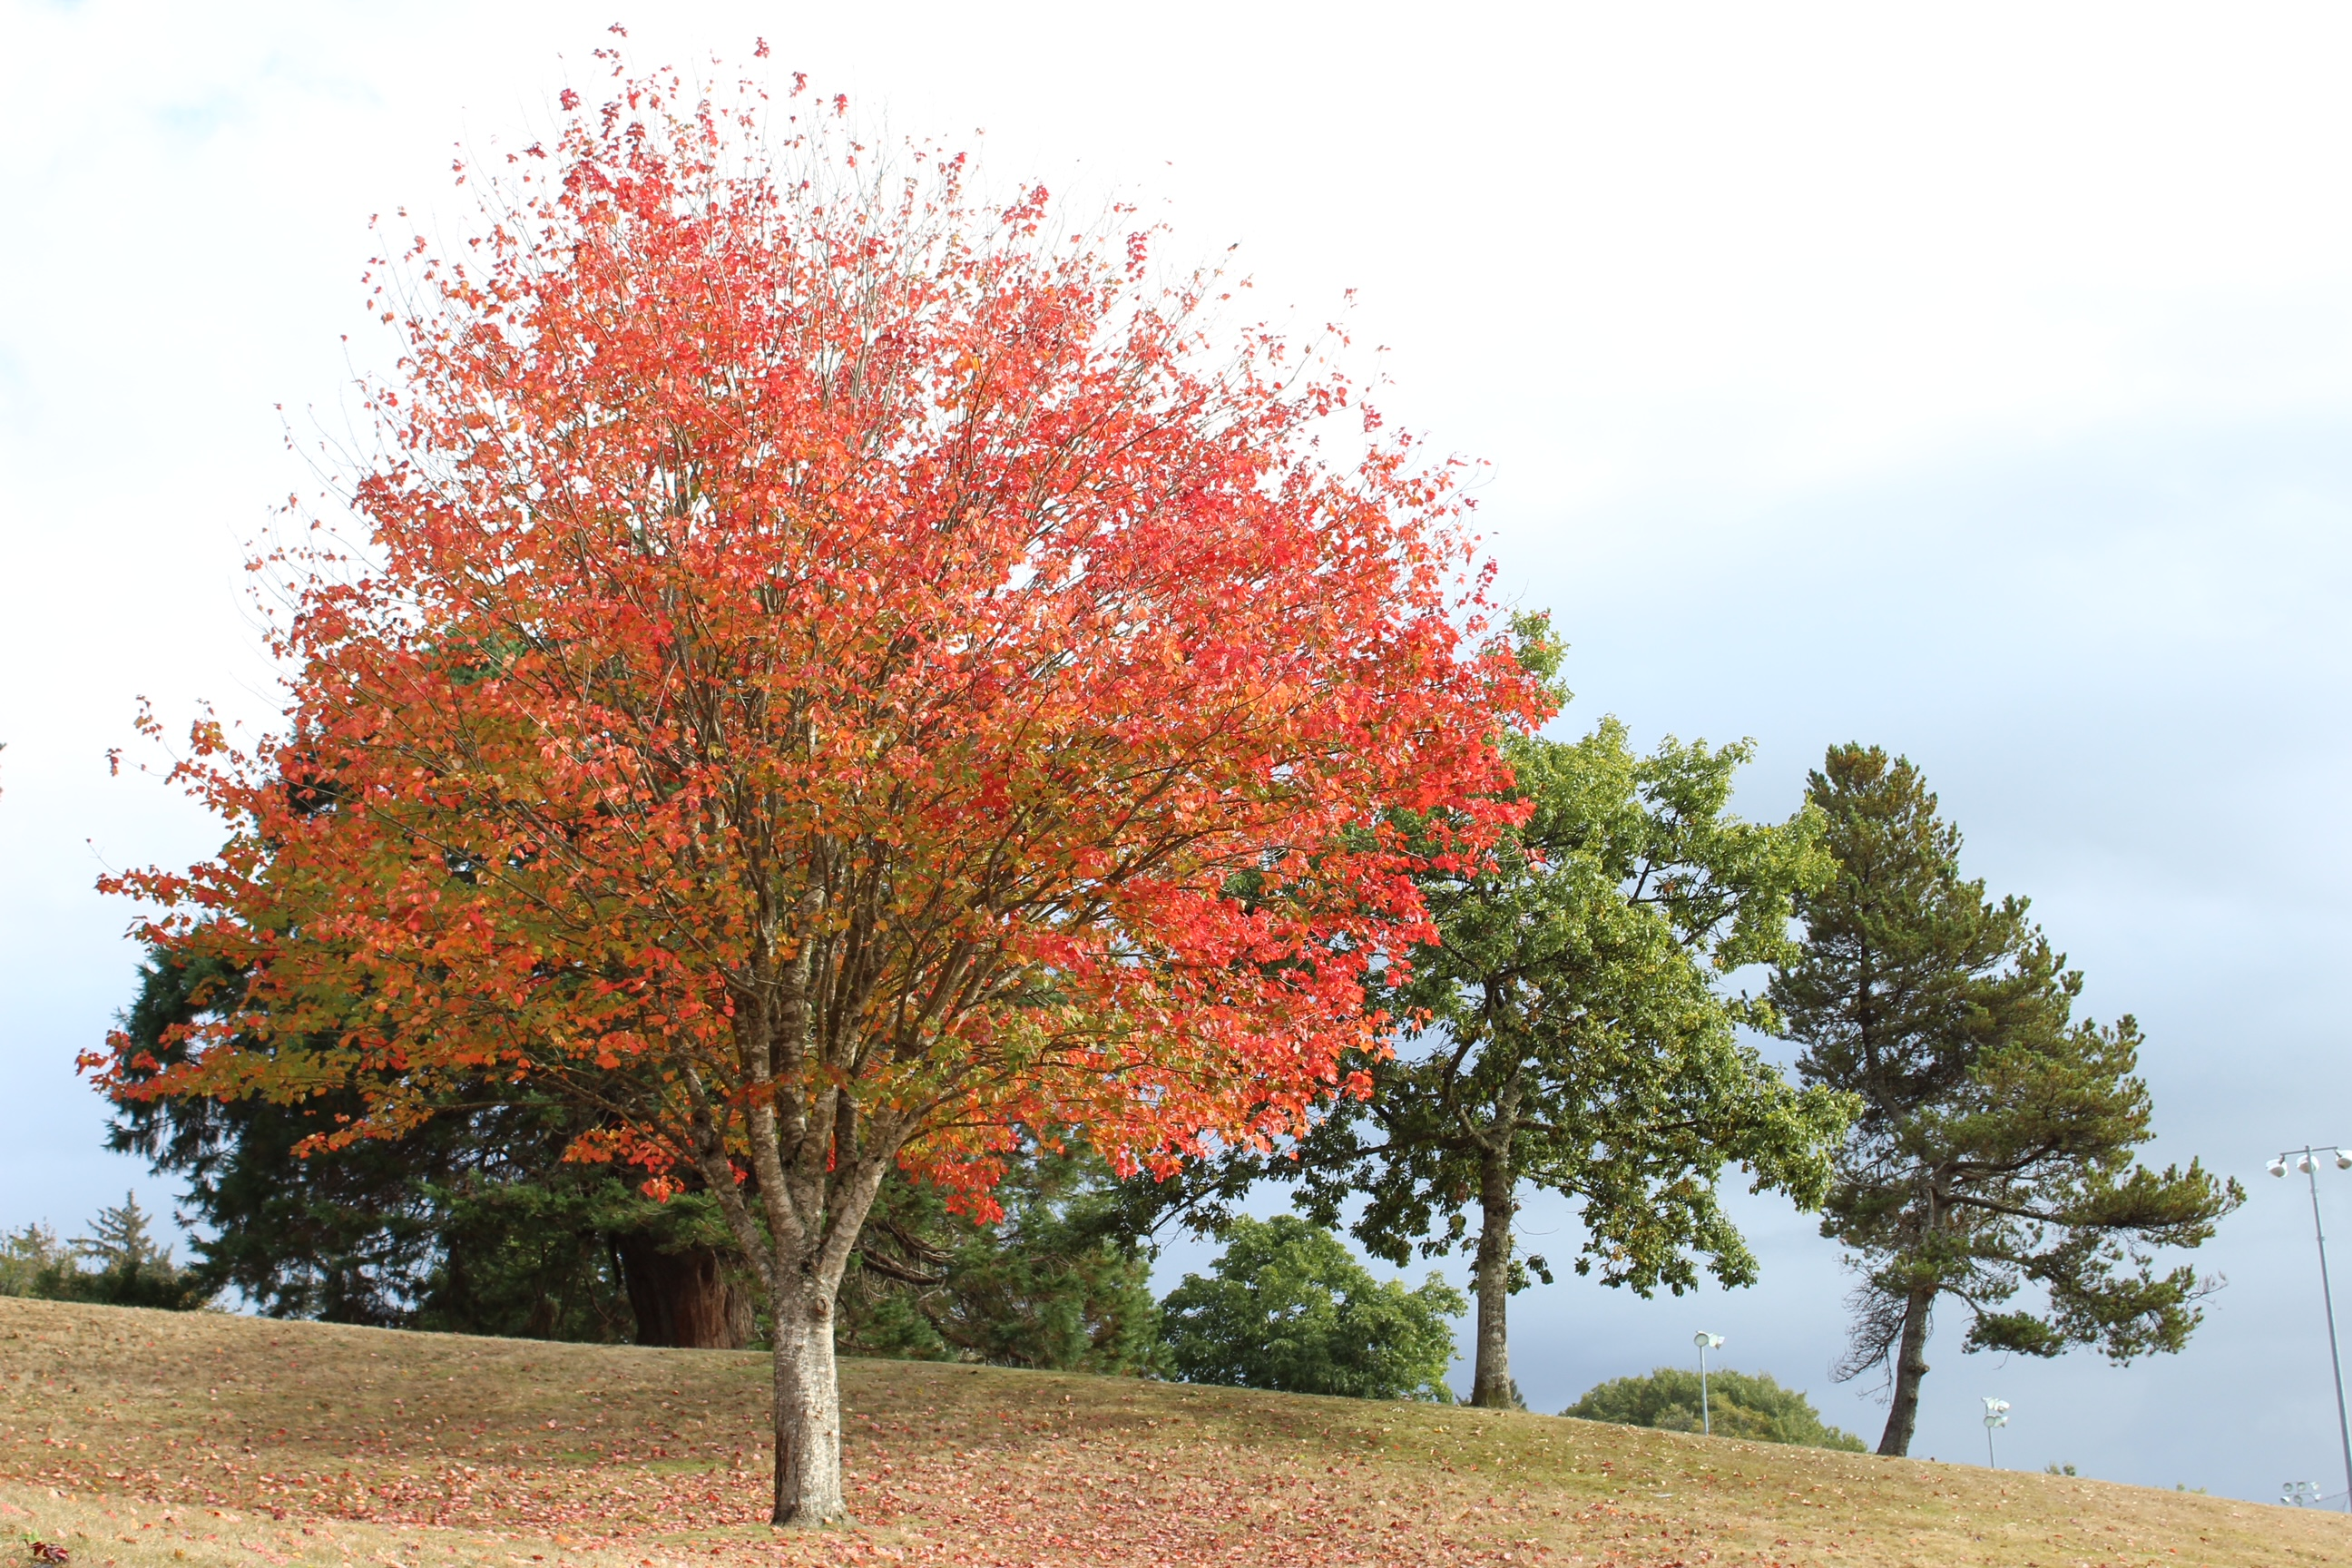 Fall foliage at Tapiola Park in Astoria, Oregon.